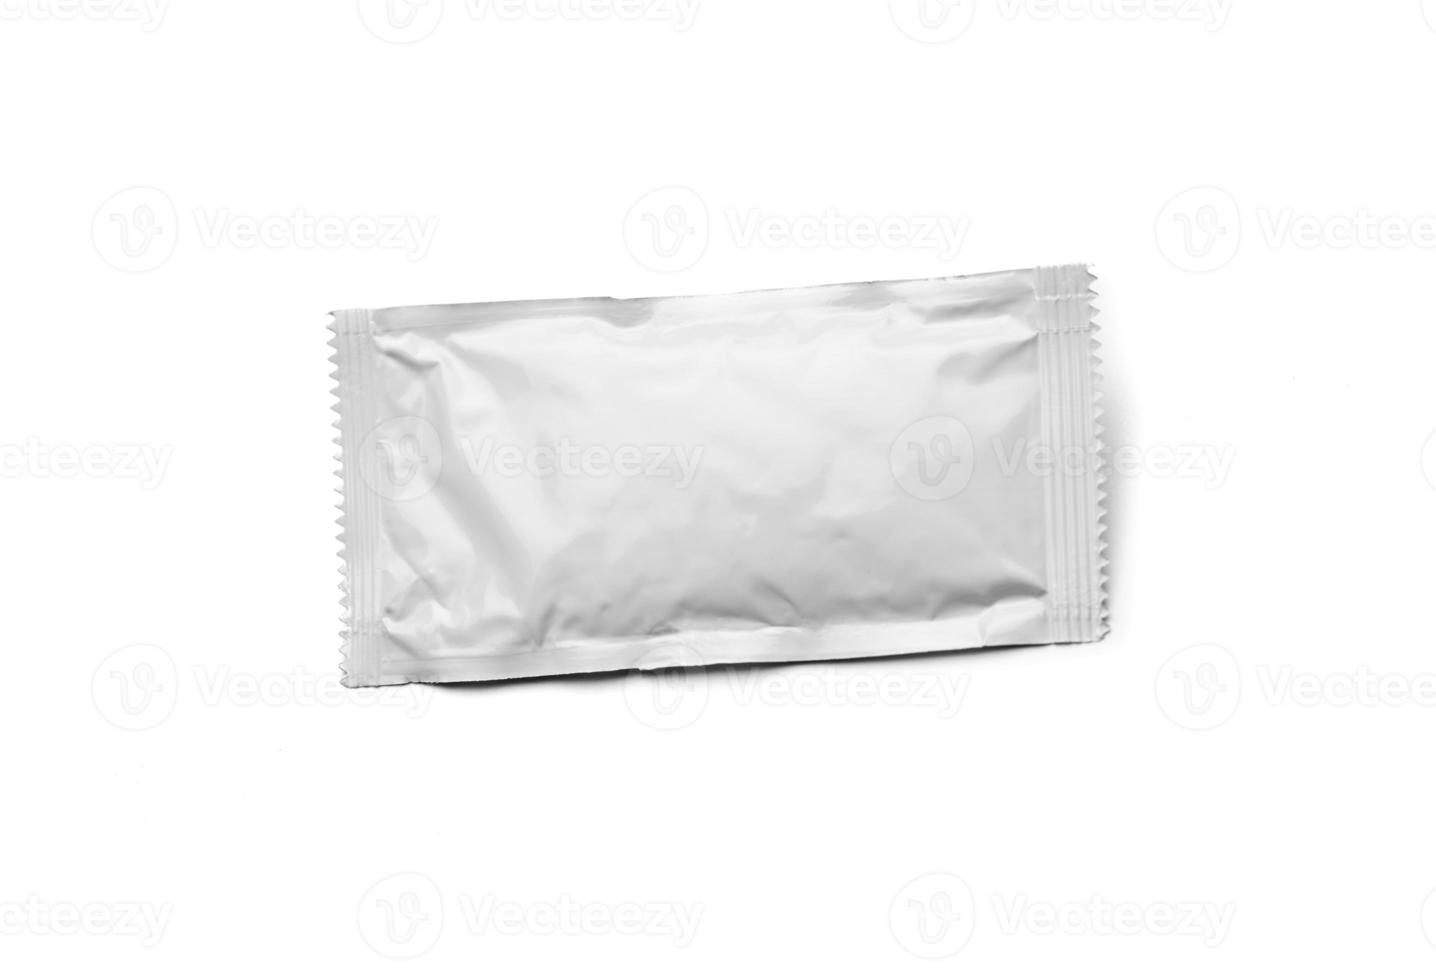 Paquete de condimento blanco en blanco flotando aislado sobre fondo blanco. foto